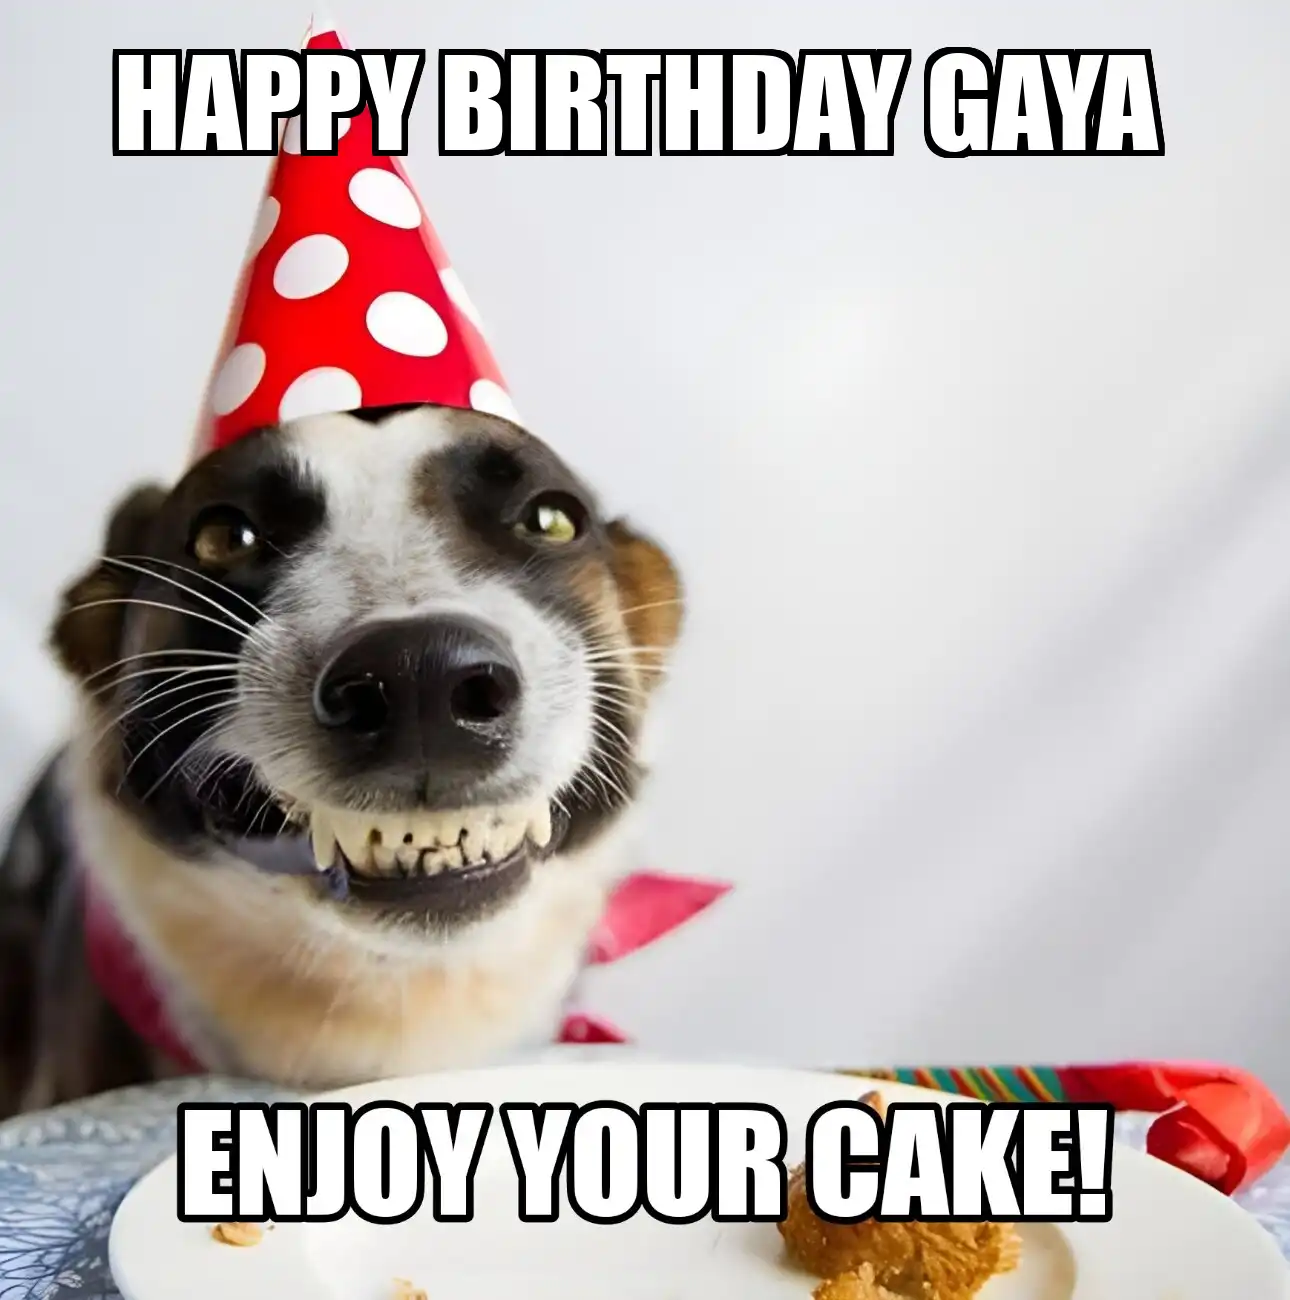 Happy Birthday Gaya Enjoy Your Cake Dog Meme